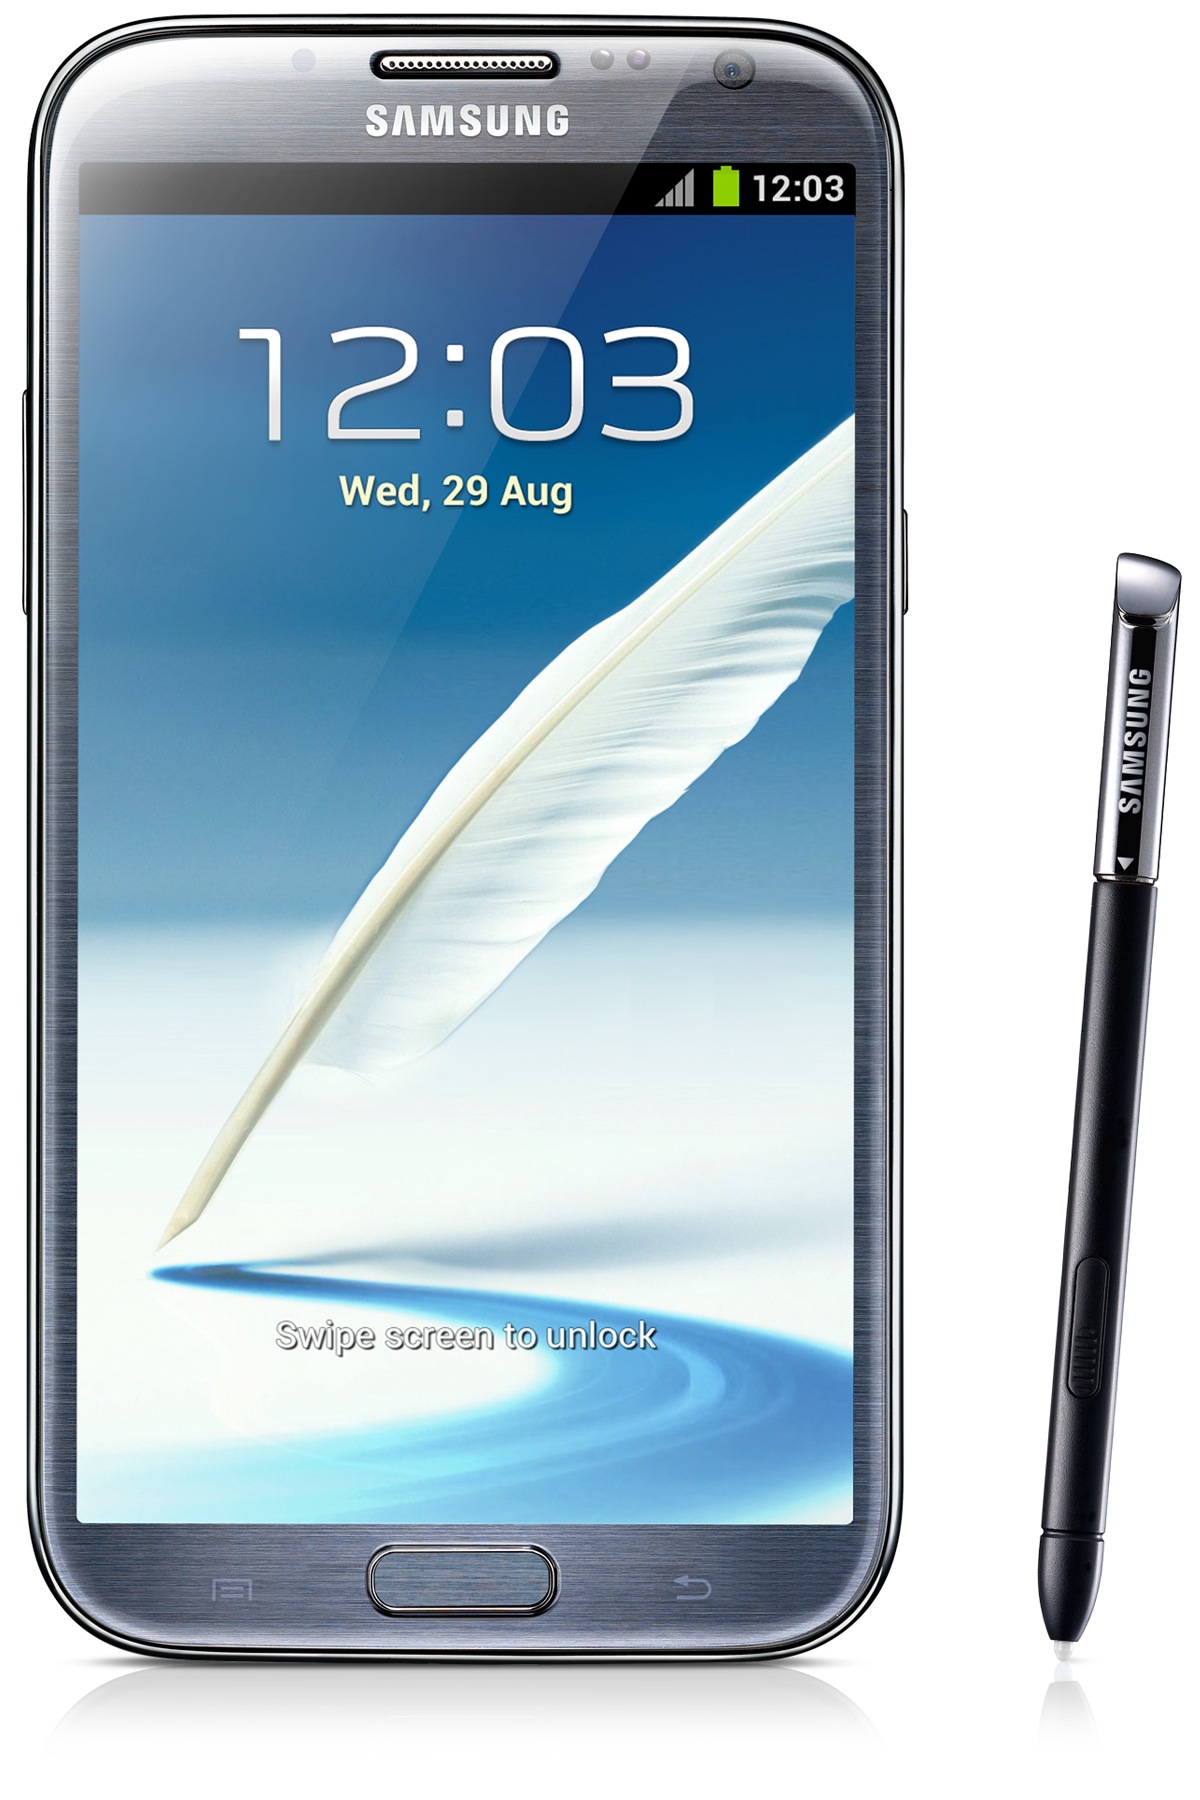 سامسونج جالكسى نوت Samsung Galaxy Note 2 بضمان سنة ب 1500 جنية فقط Eg_GT-N7100TADEGY_001_Front_gray?$L2-Gallery$